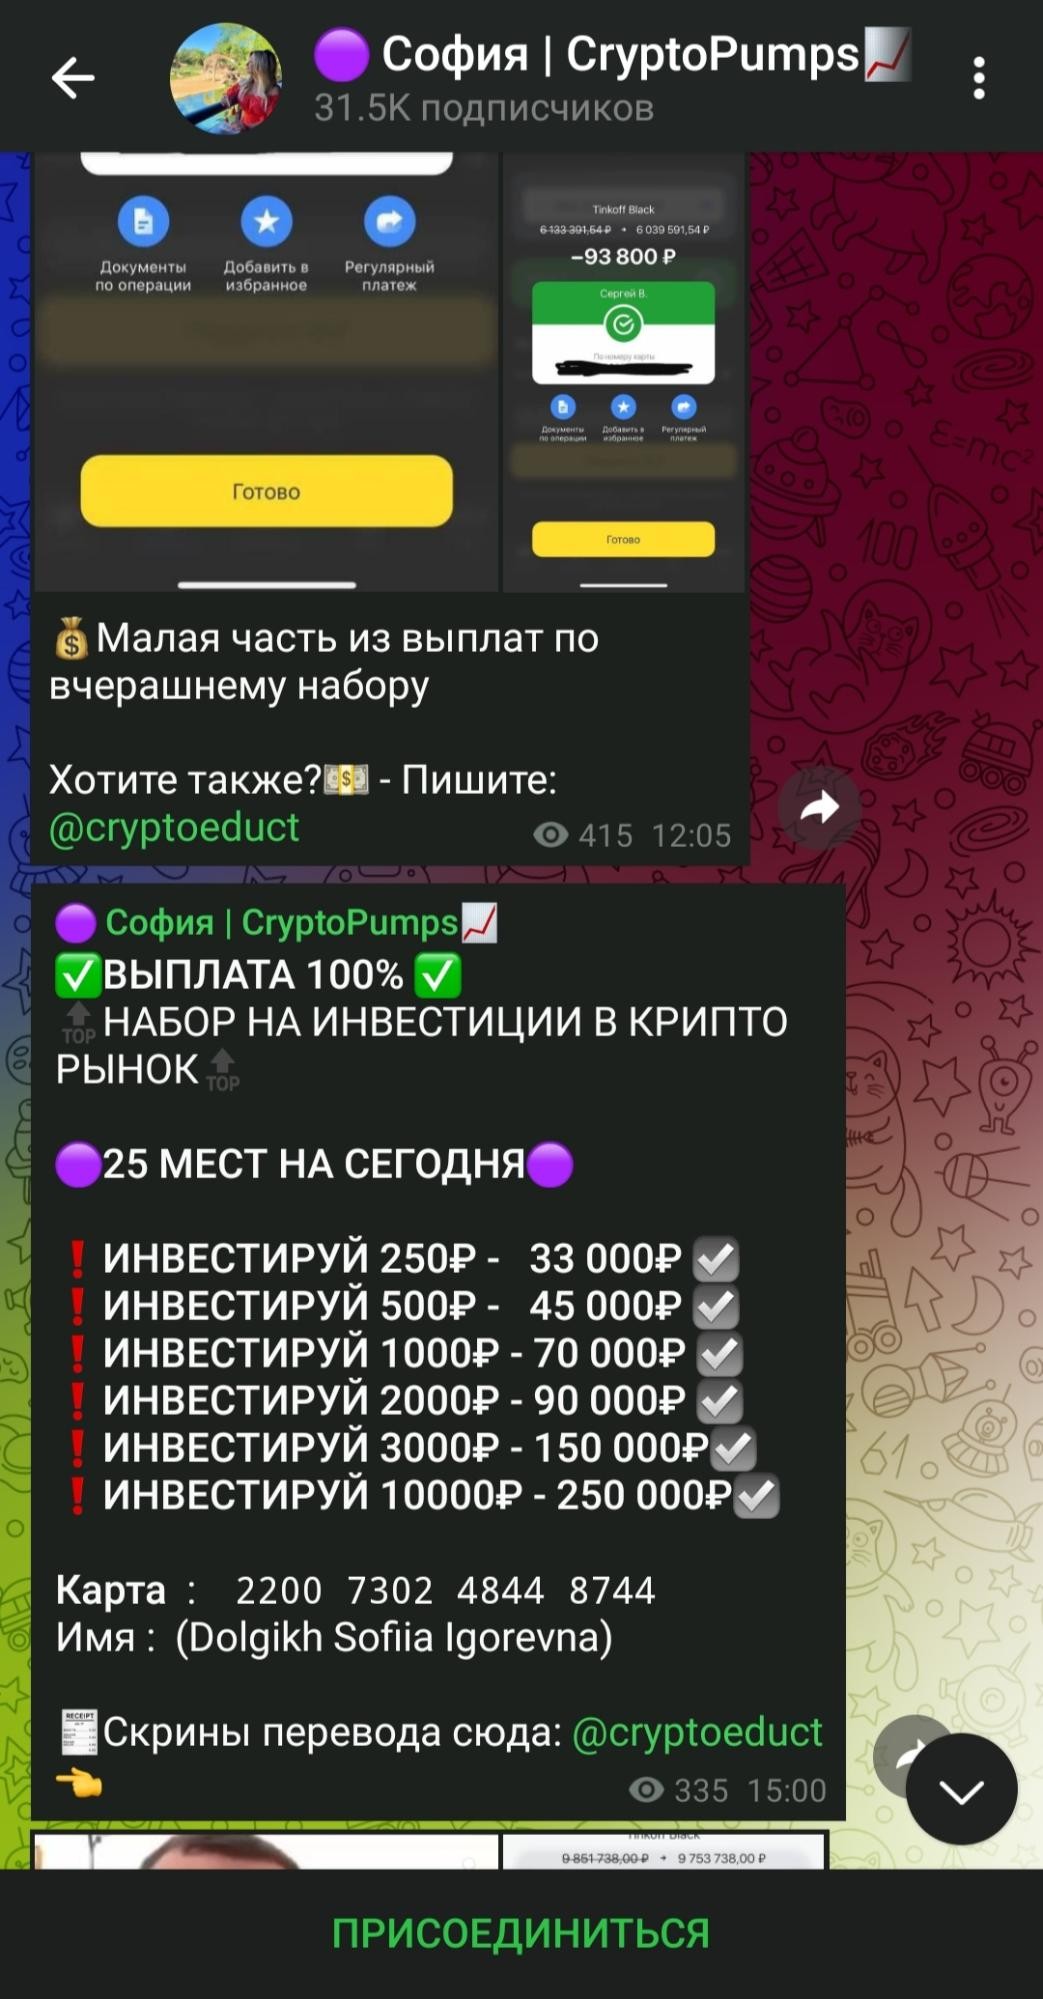 Телеграм София Crypto Pumps обзор